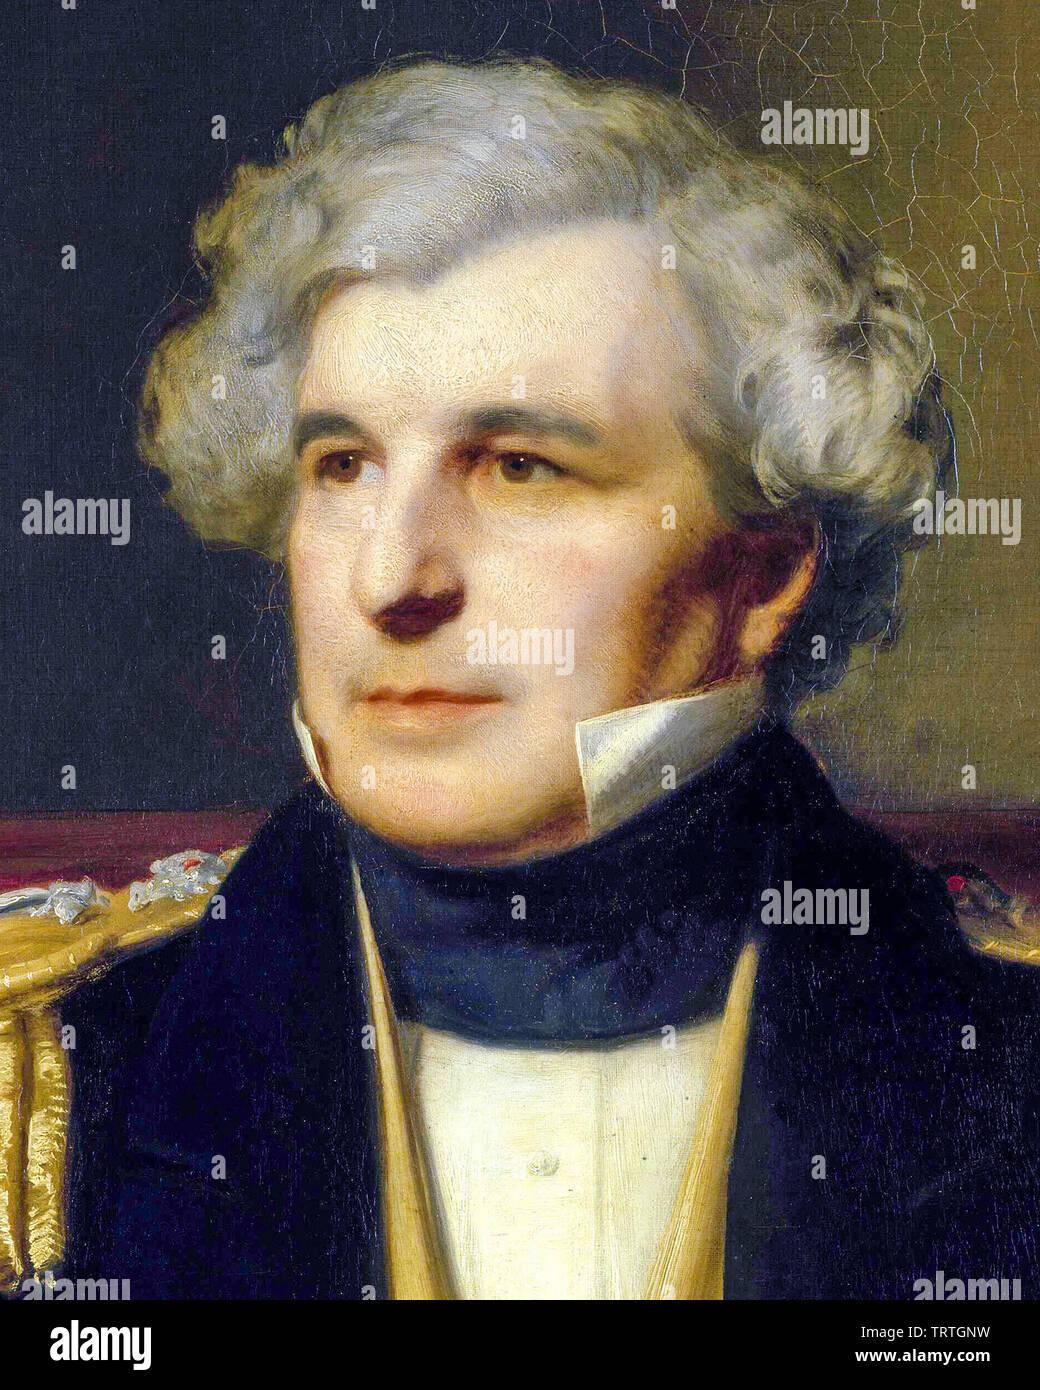 Il capitano Sir James Clark Ross, 1800-1862, ritratto dipinto (dettaglio), 1871 Foto Stock